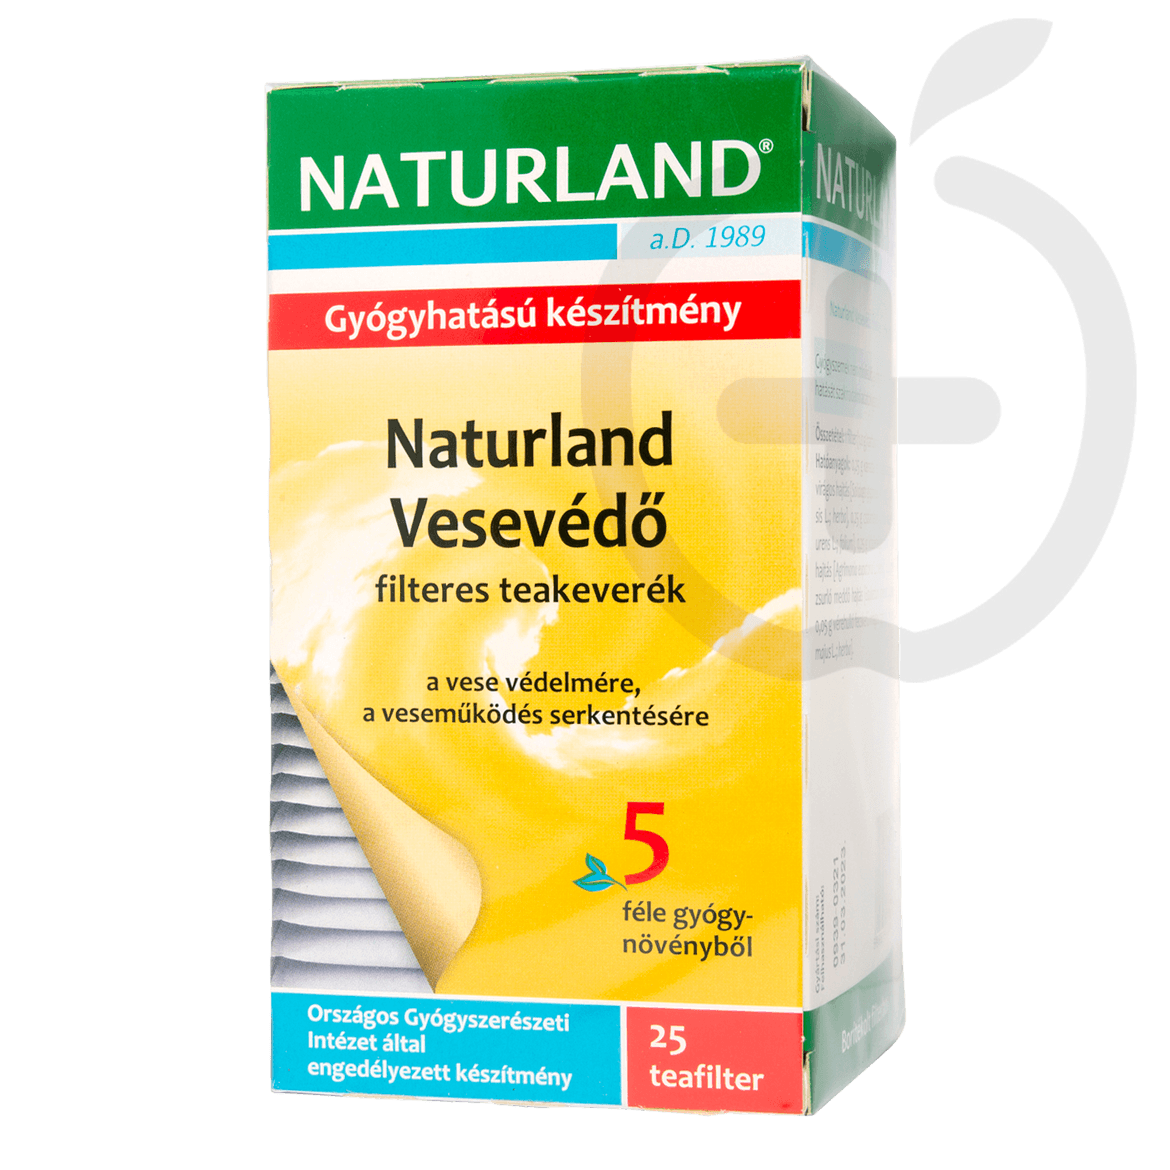 Naturland vesevédő filteres teakeverék